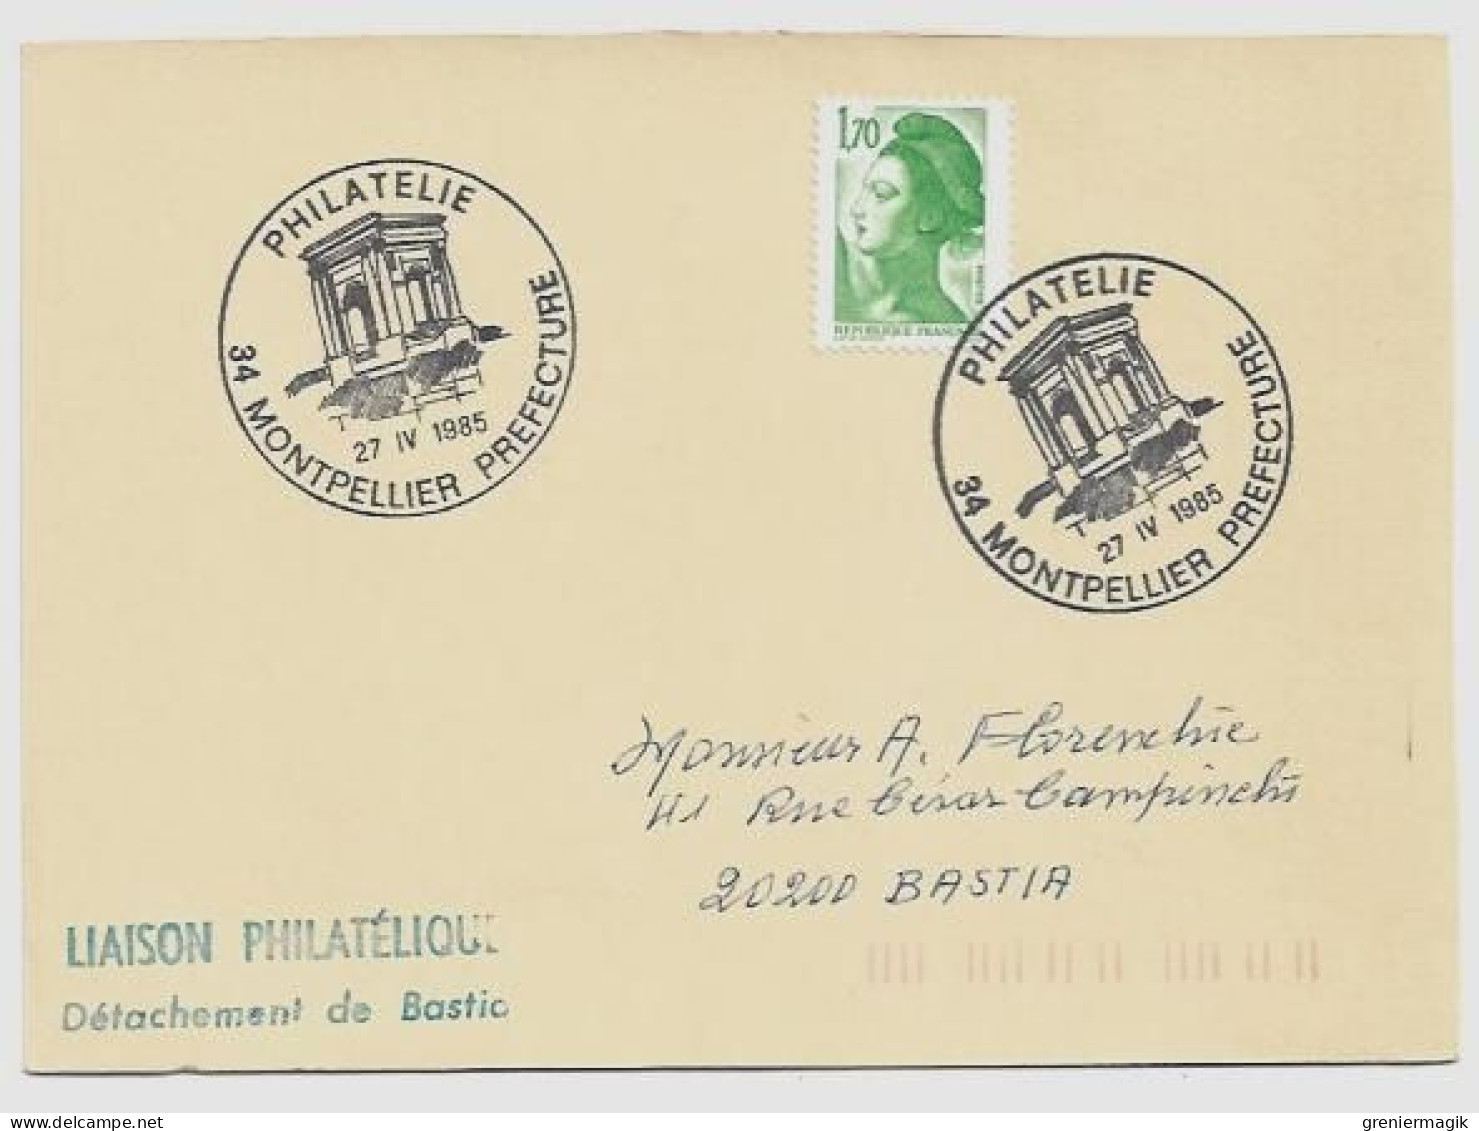 N°2318 Cachet Philatélie Montpellier Préfecture 27 IV 1985 - Liaison Philatélique Bastia - Liberté Gandon 1,70 Vert - Tijdelijke Stempels